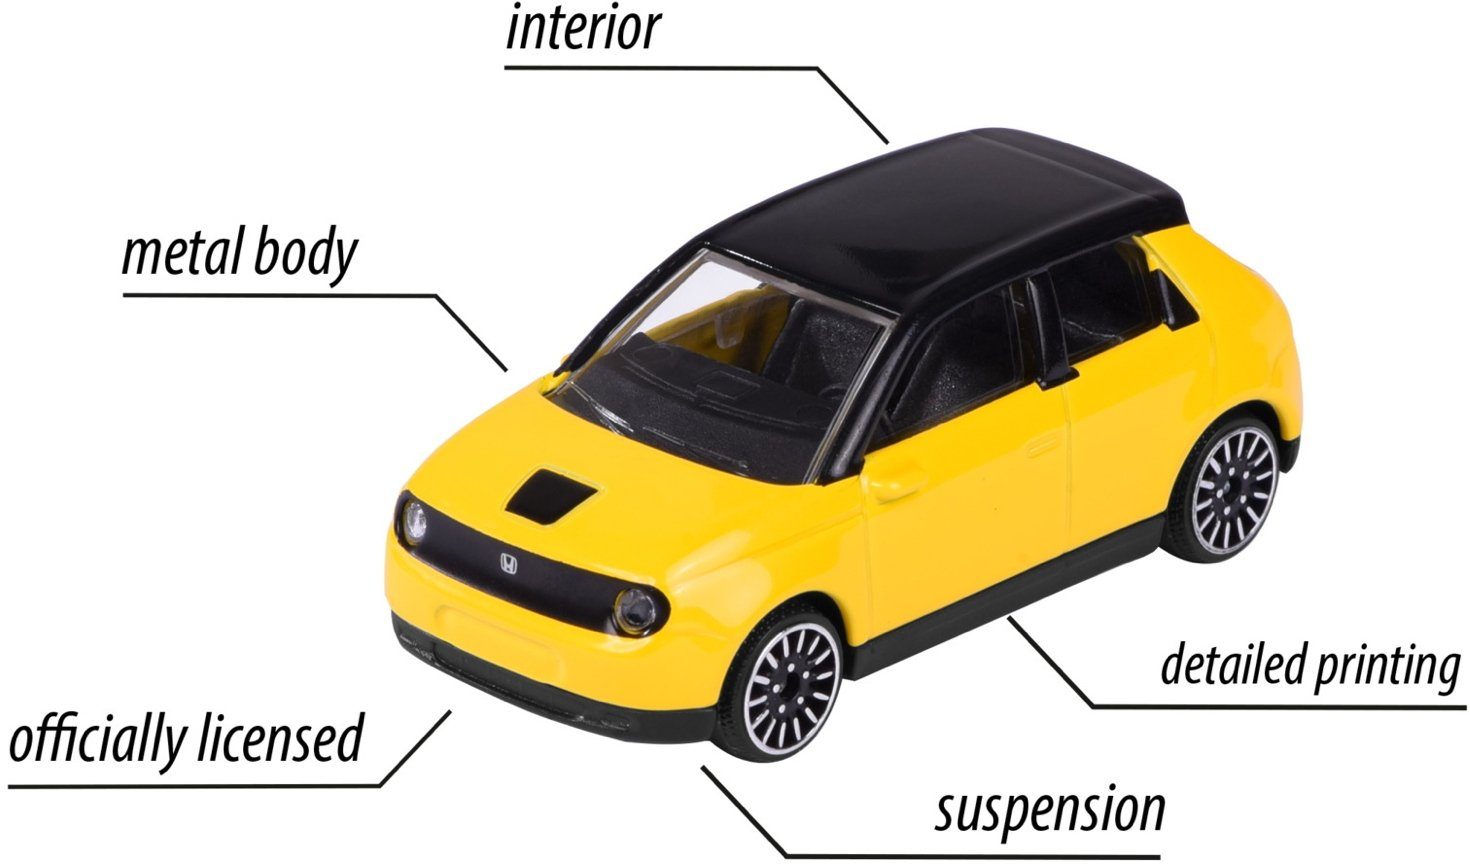 212053051Q10 Spielzeug-Auto Spielzeugauto E Honda majORETTE Street Cars gelb